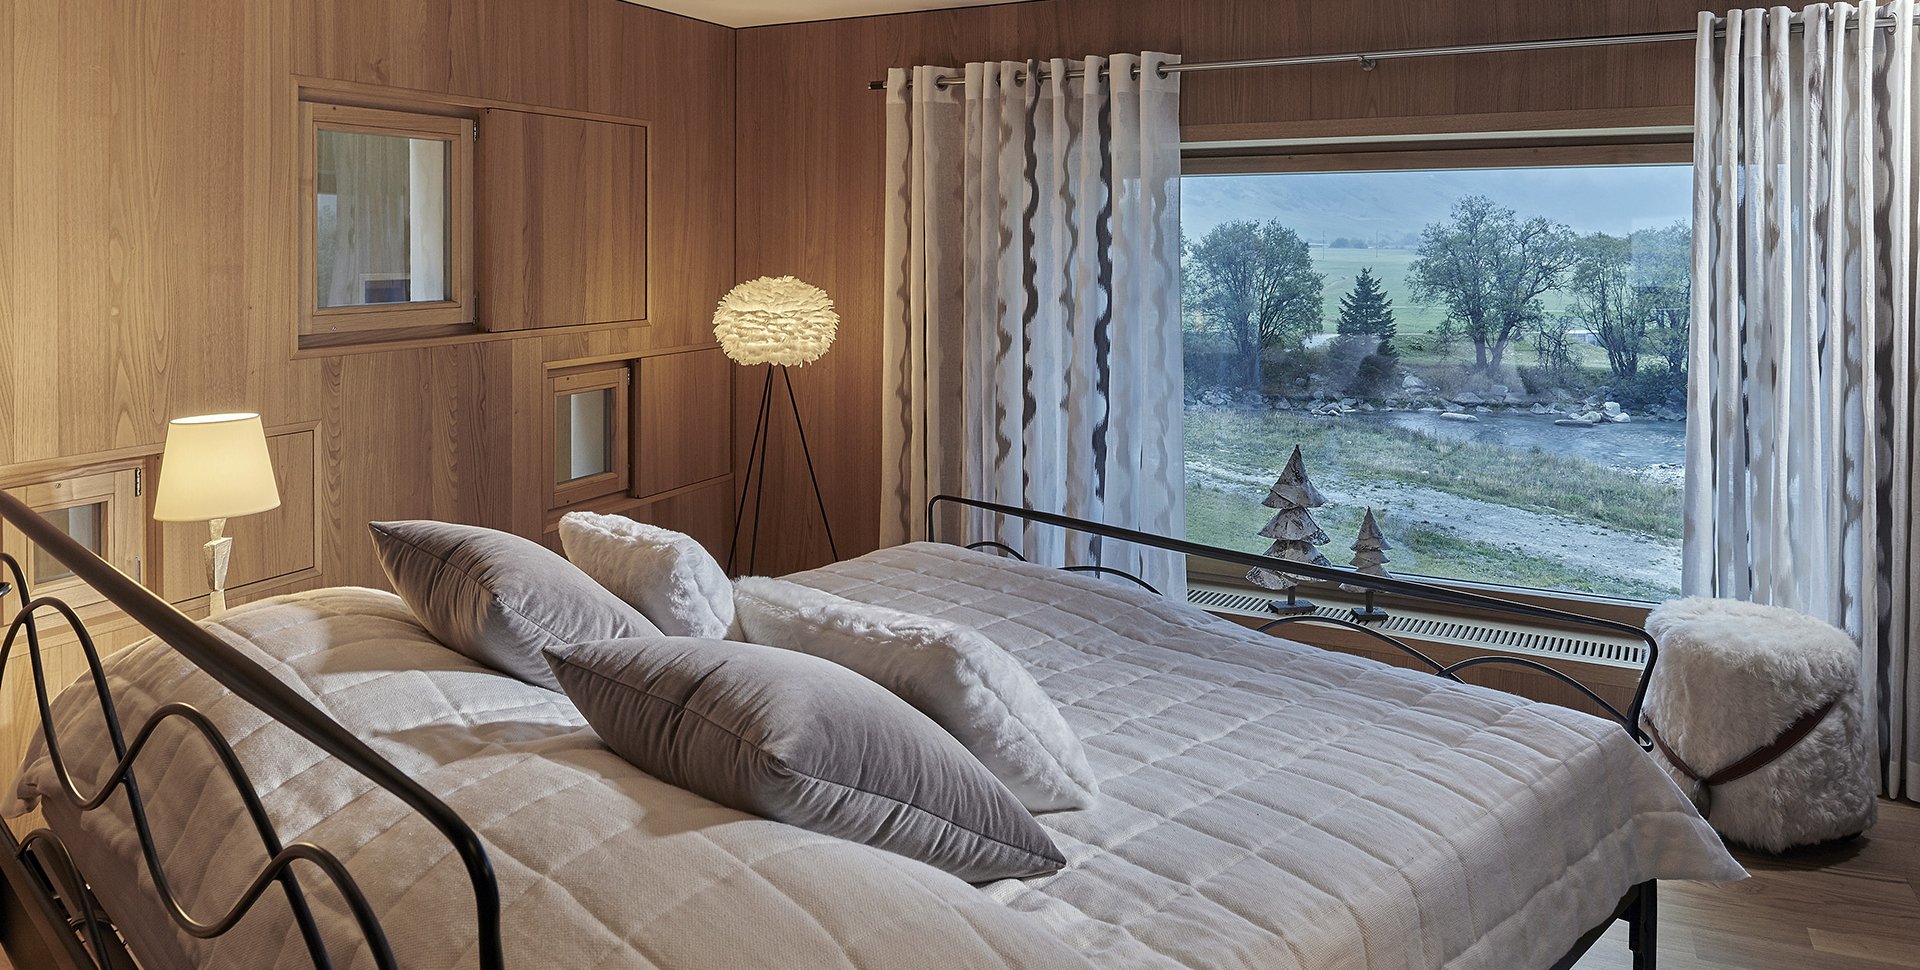 Bedroom of a luxurious villa in Alps by Borella Art Design